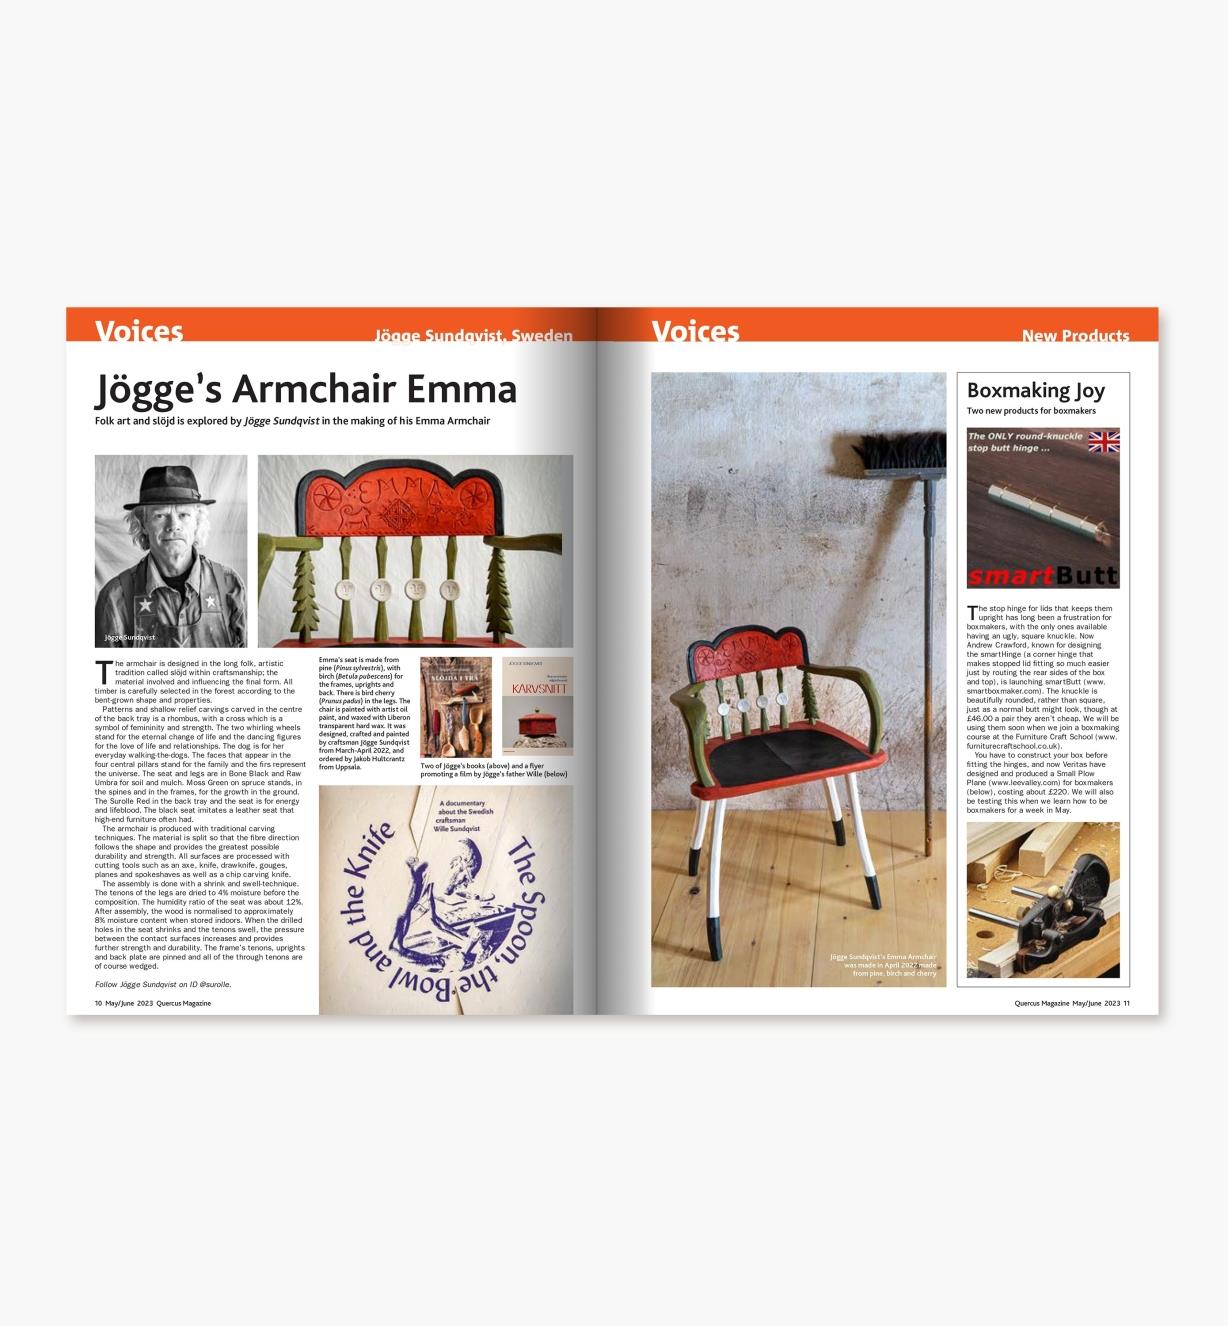 42L9558 - Quercus Magazine, Issue 18